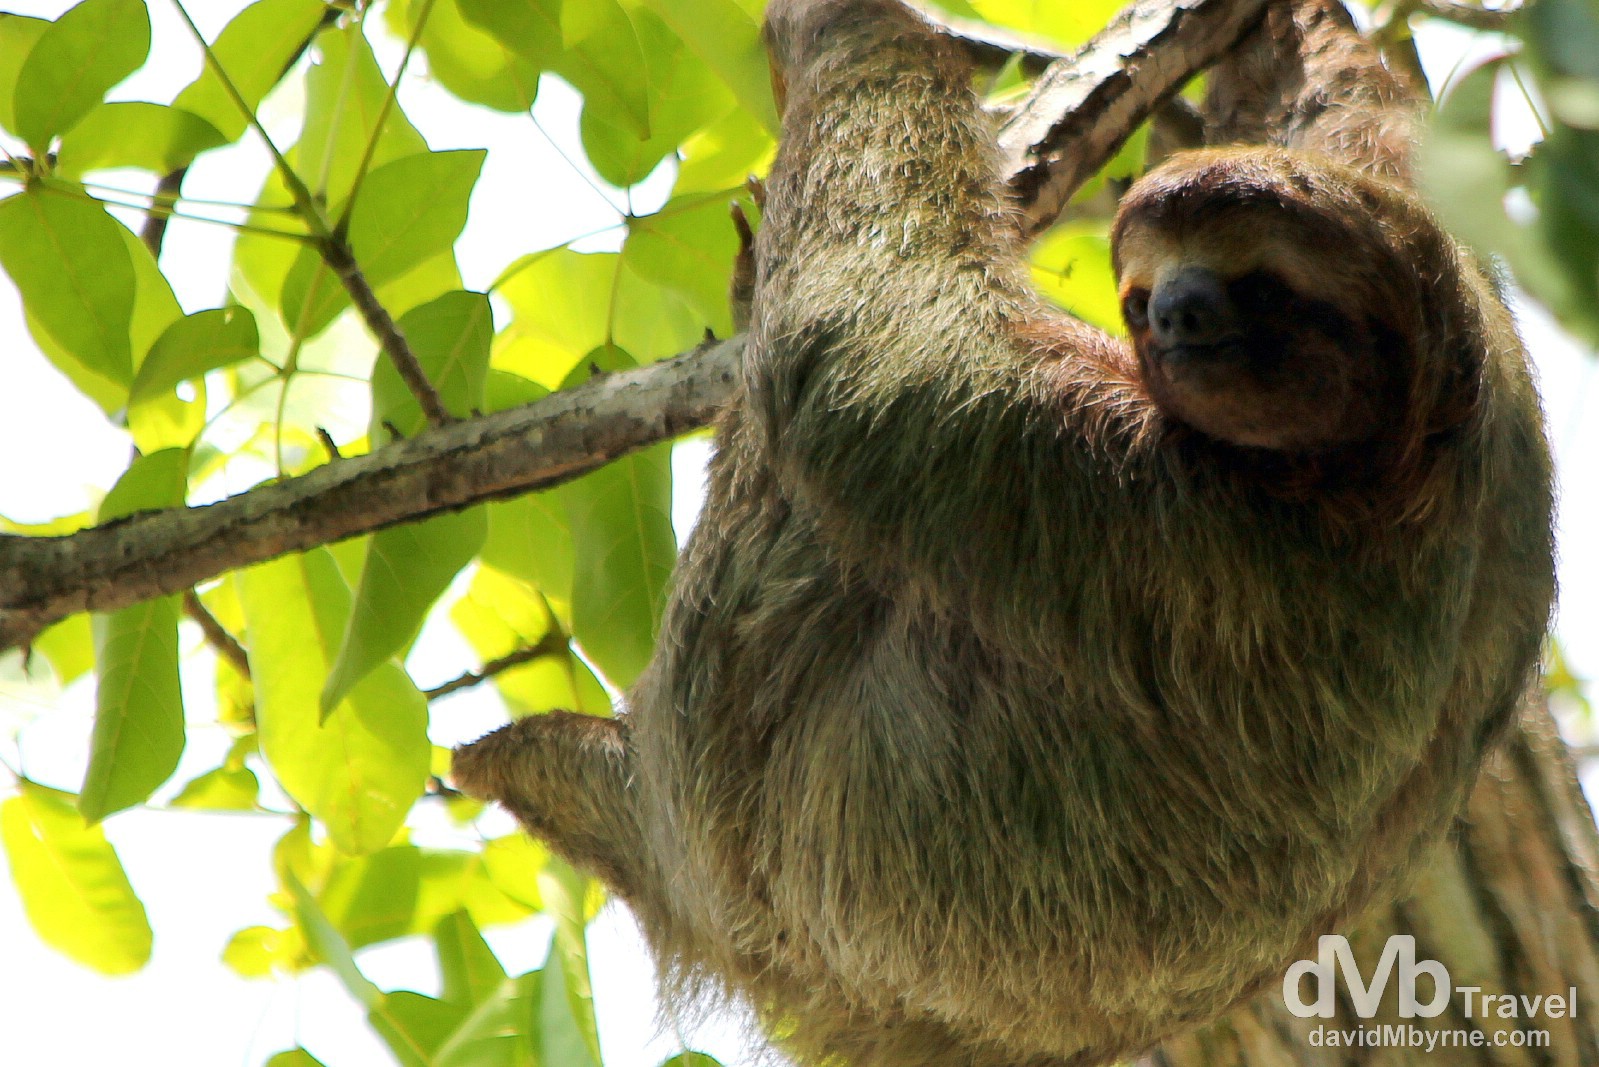 A sloth high in a tree in Parque Nacional Manuel Antonio, Costa Rica. June 26th 2013.